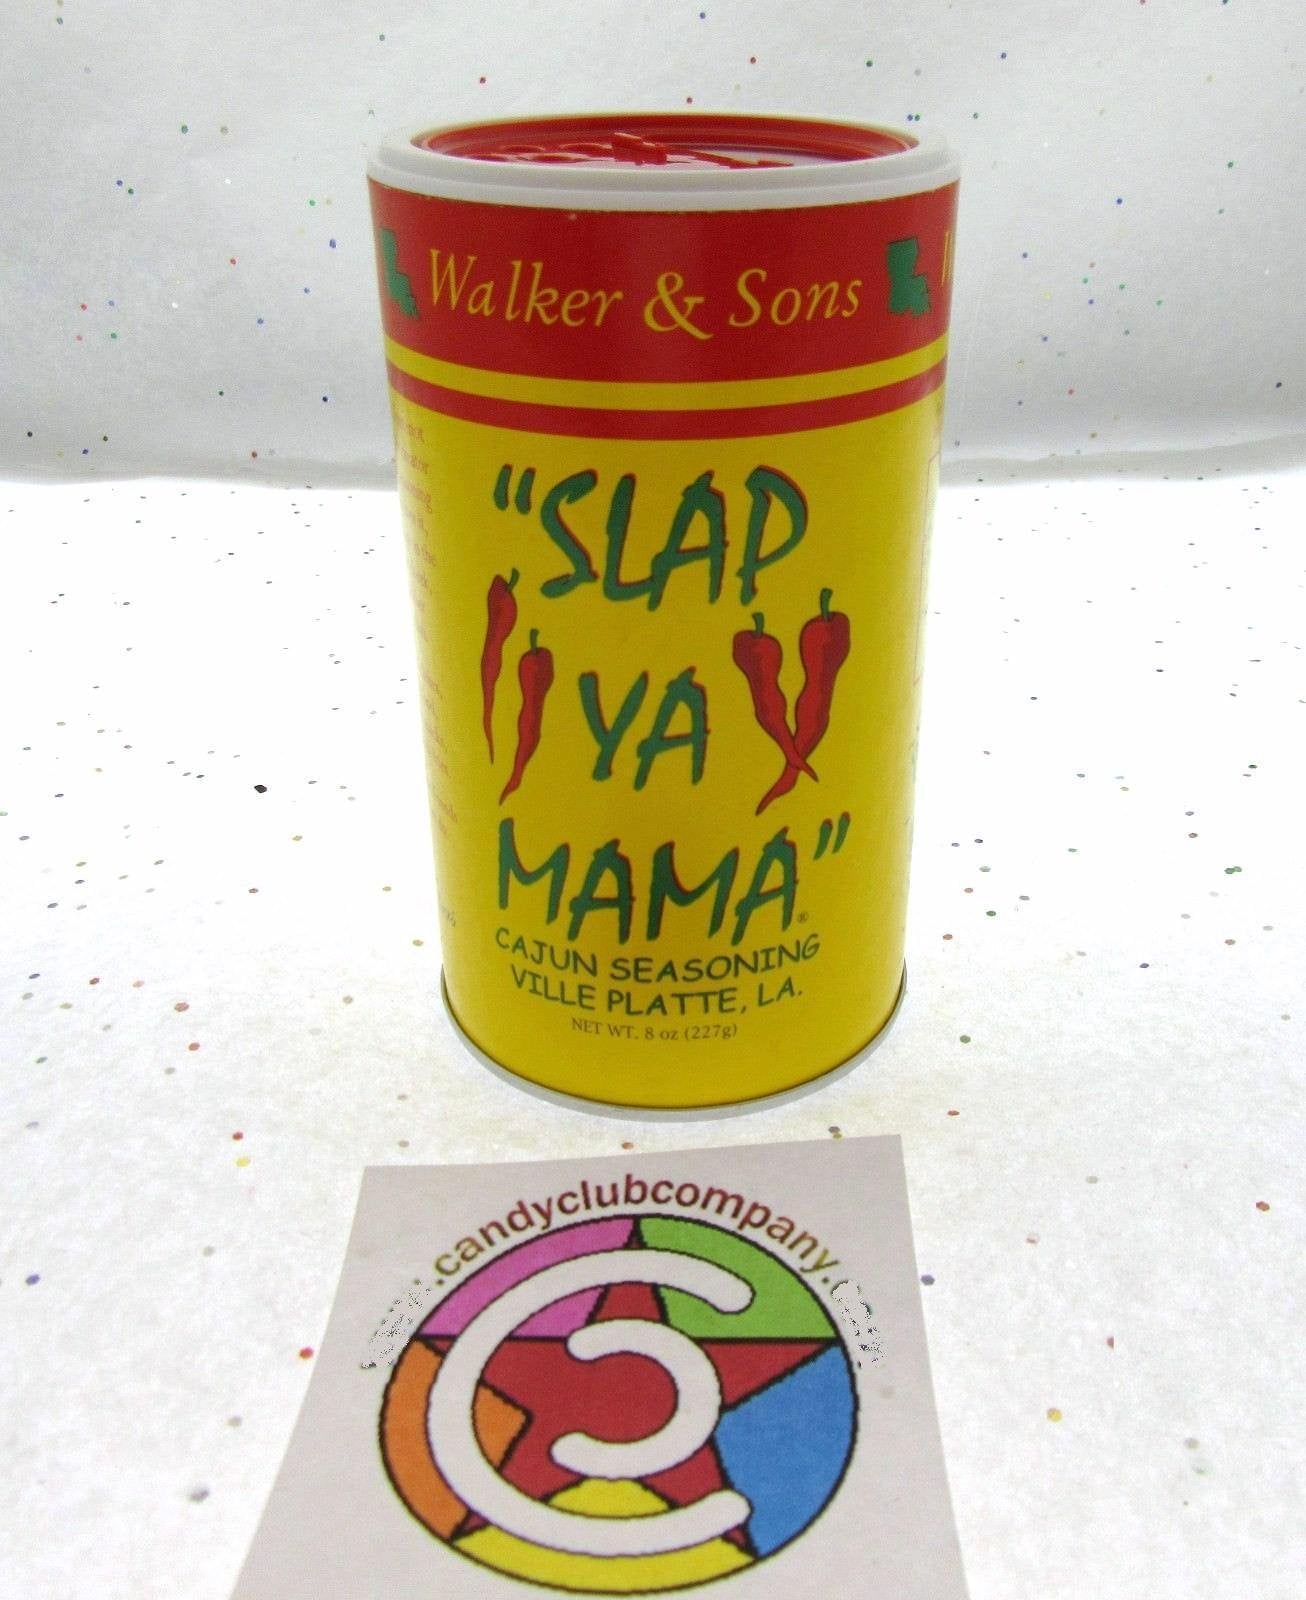 Slap Ya Mama Original Cajun Seasoning Salt, Salt, Spices & Seasonings